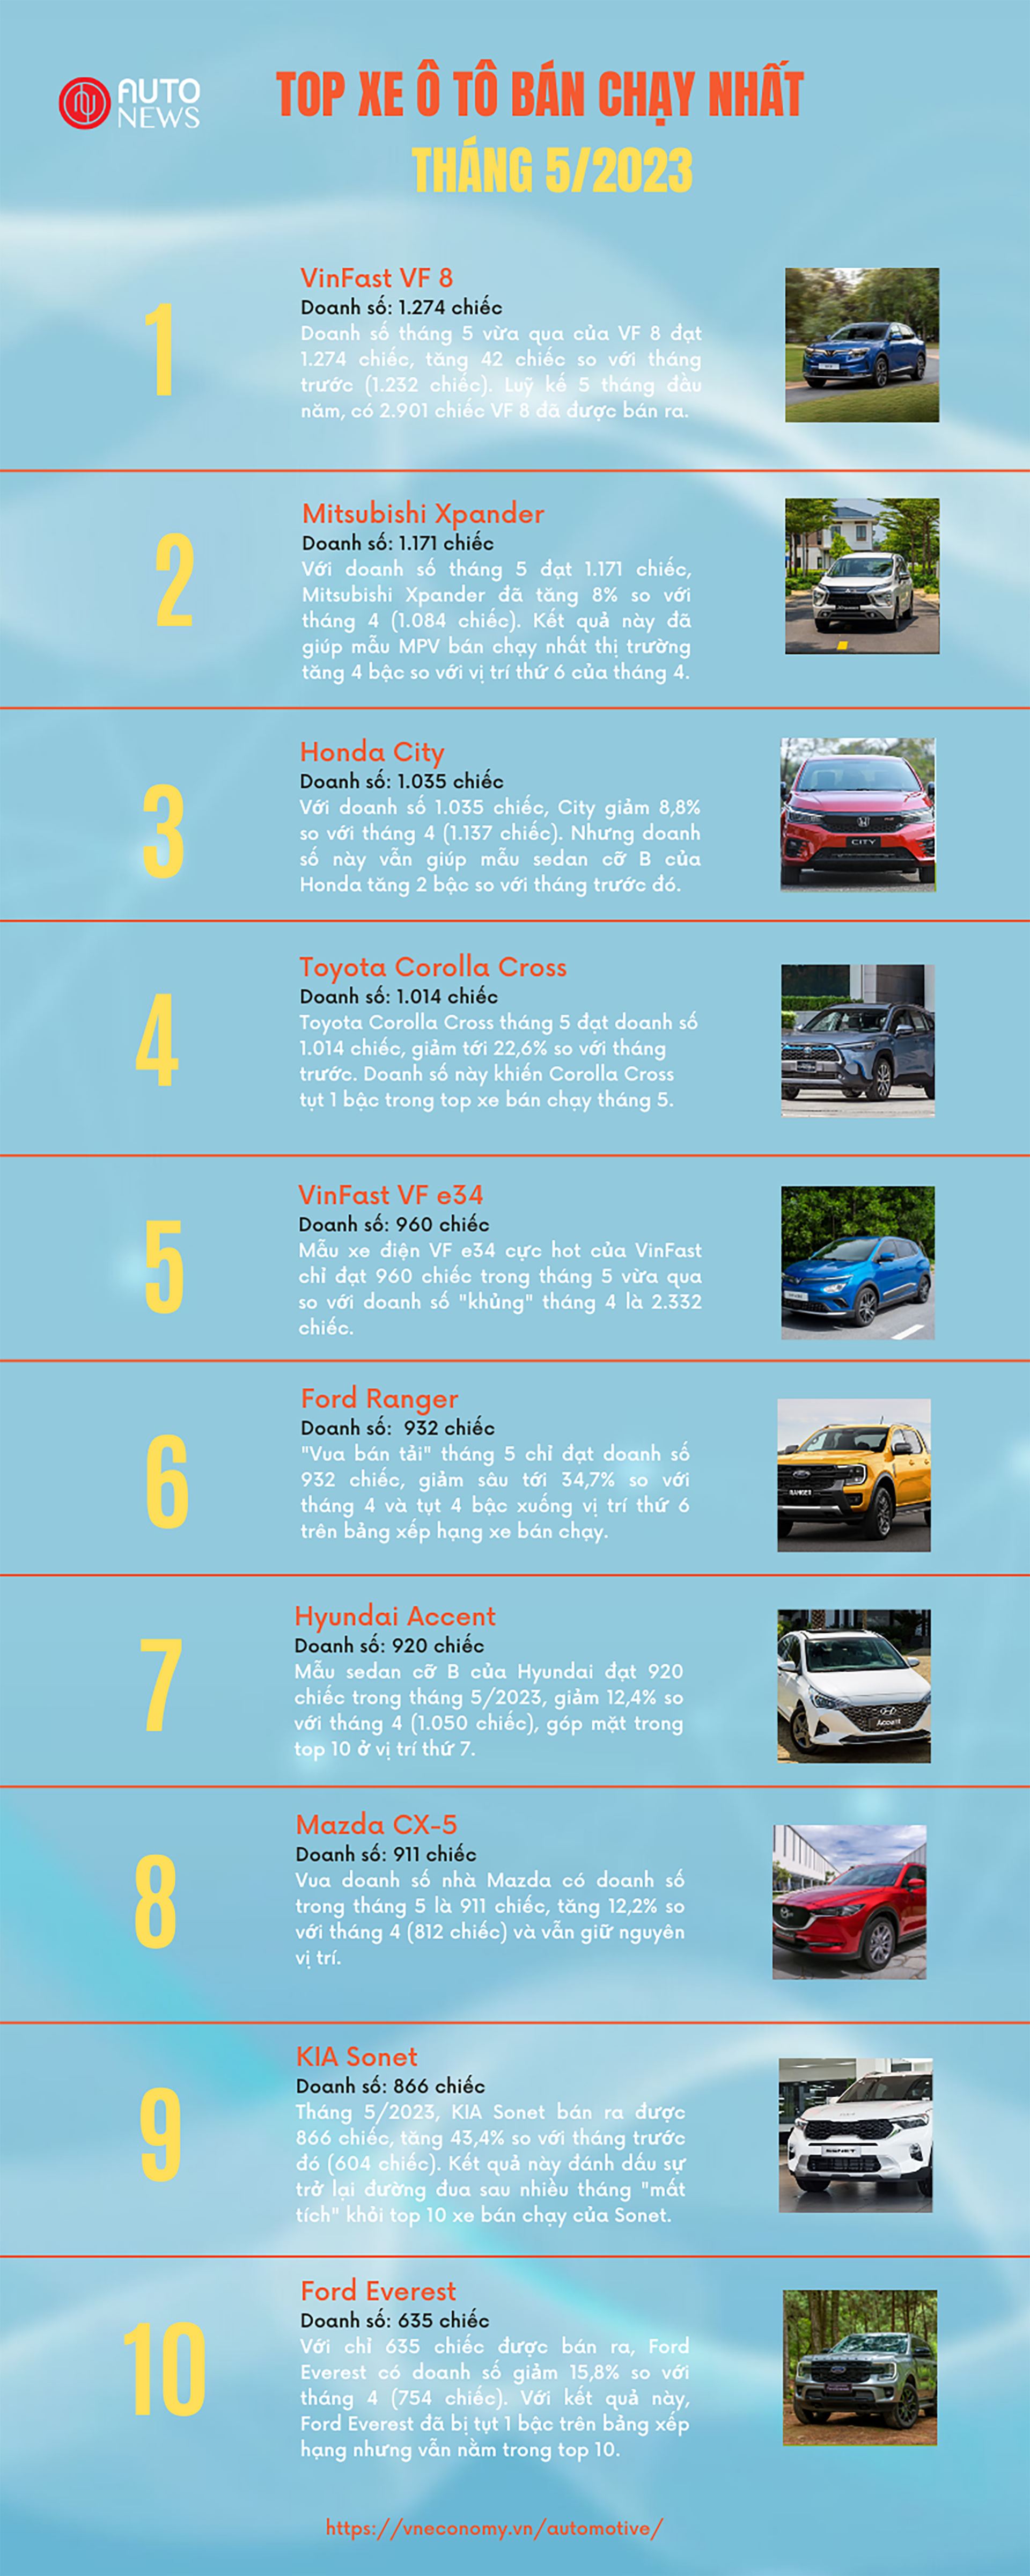 Top xe bán chạy nhất tháng 5: VinFast VF 8 lên đỉnh, Vios bất ngờ bị loại khỏi top 10 - Ảnh 1